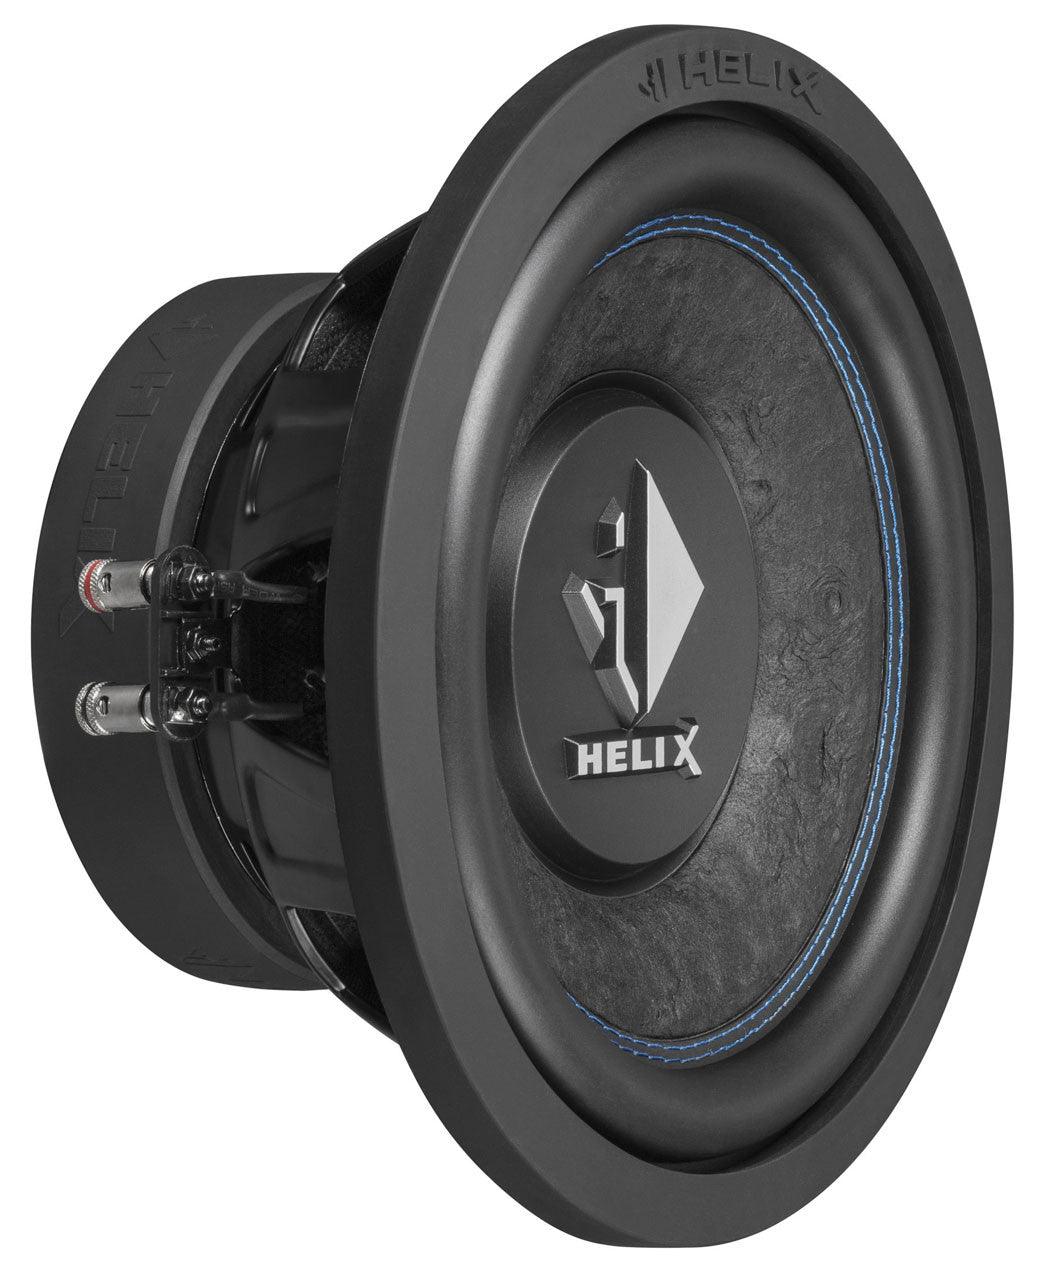 Helix K 10W - 25cm - Basshead Store